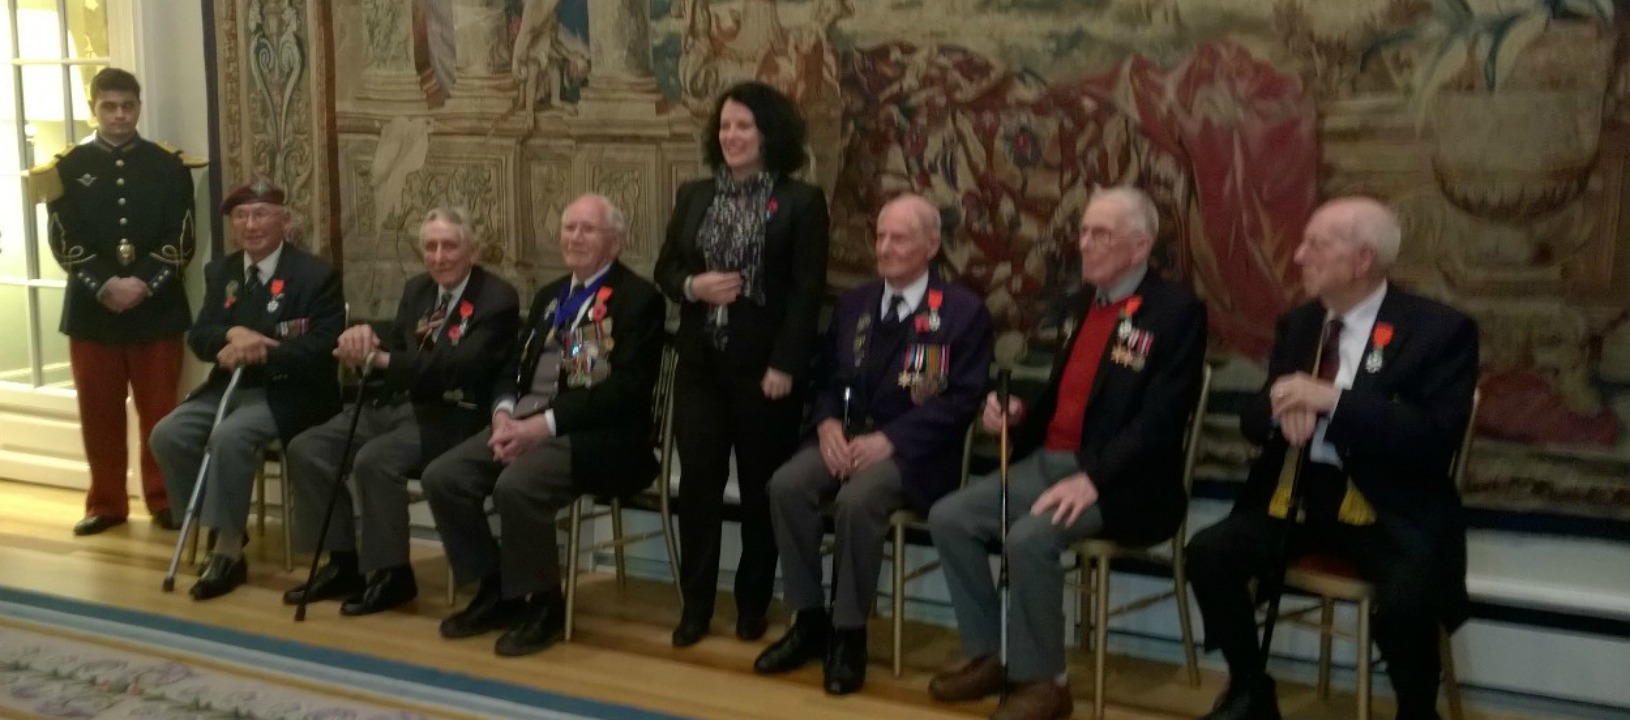 Sylvie Bermann, ambassadeur de France au Royaume-Uni, a remis les insignes de Chevalier de la Légion d’Honneur à six vétérans britanniques de la Seconde Guerre mondiale